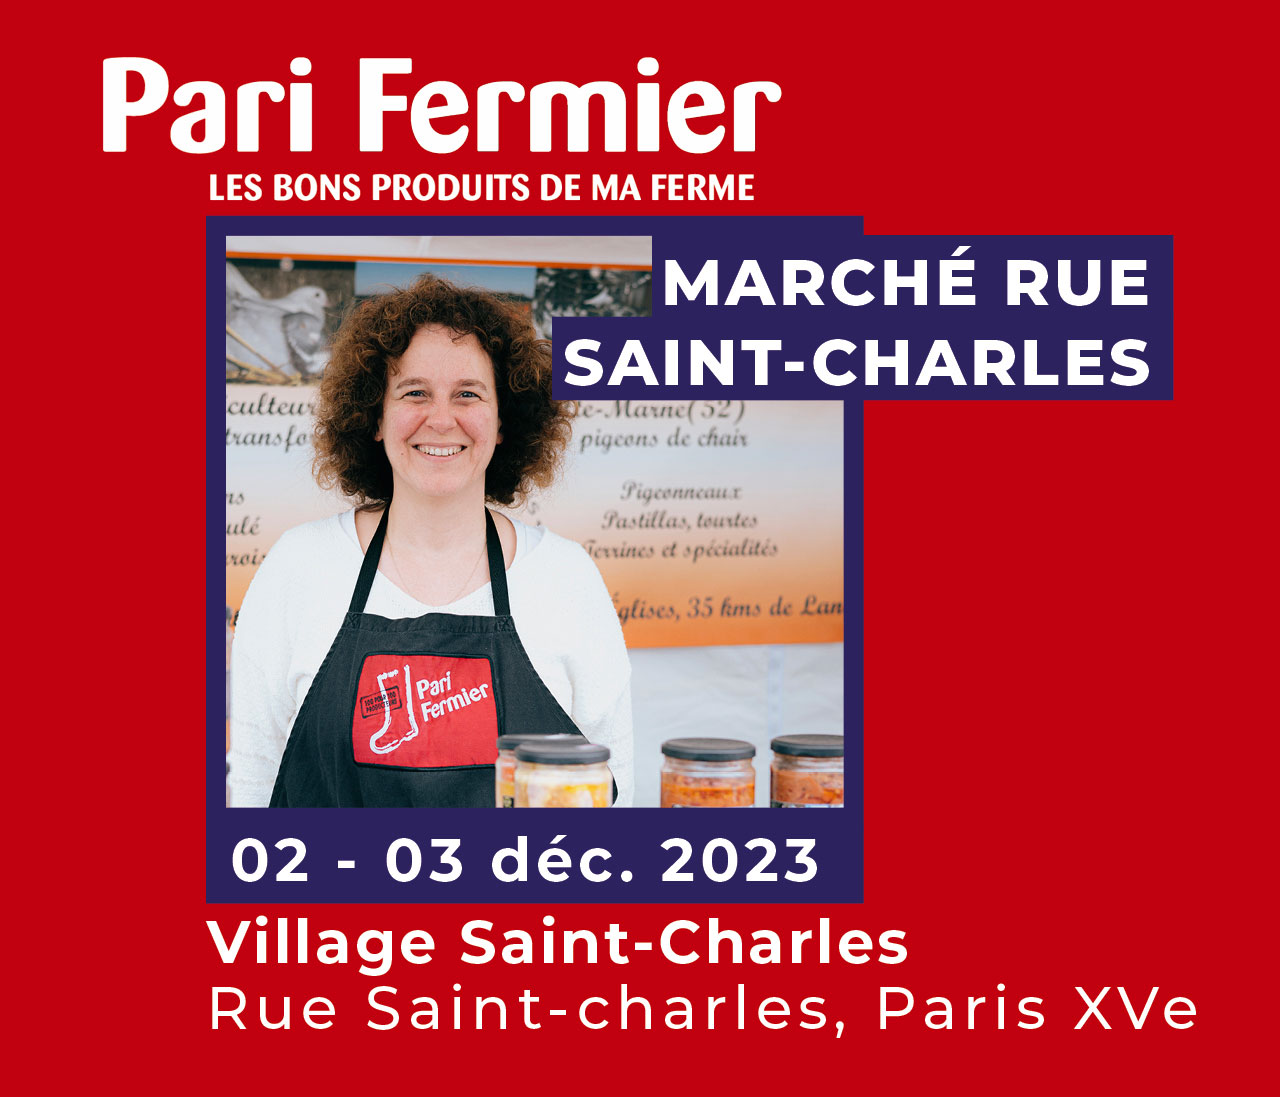 Pari fermier marché producteurs Rue saint charles PARIS 15 Décembre 2023